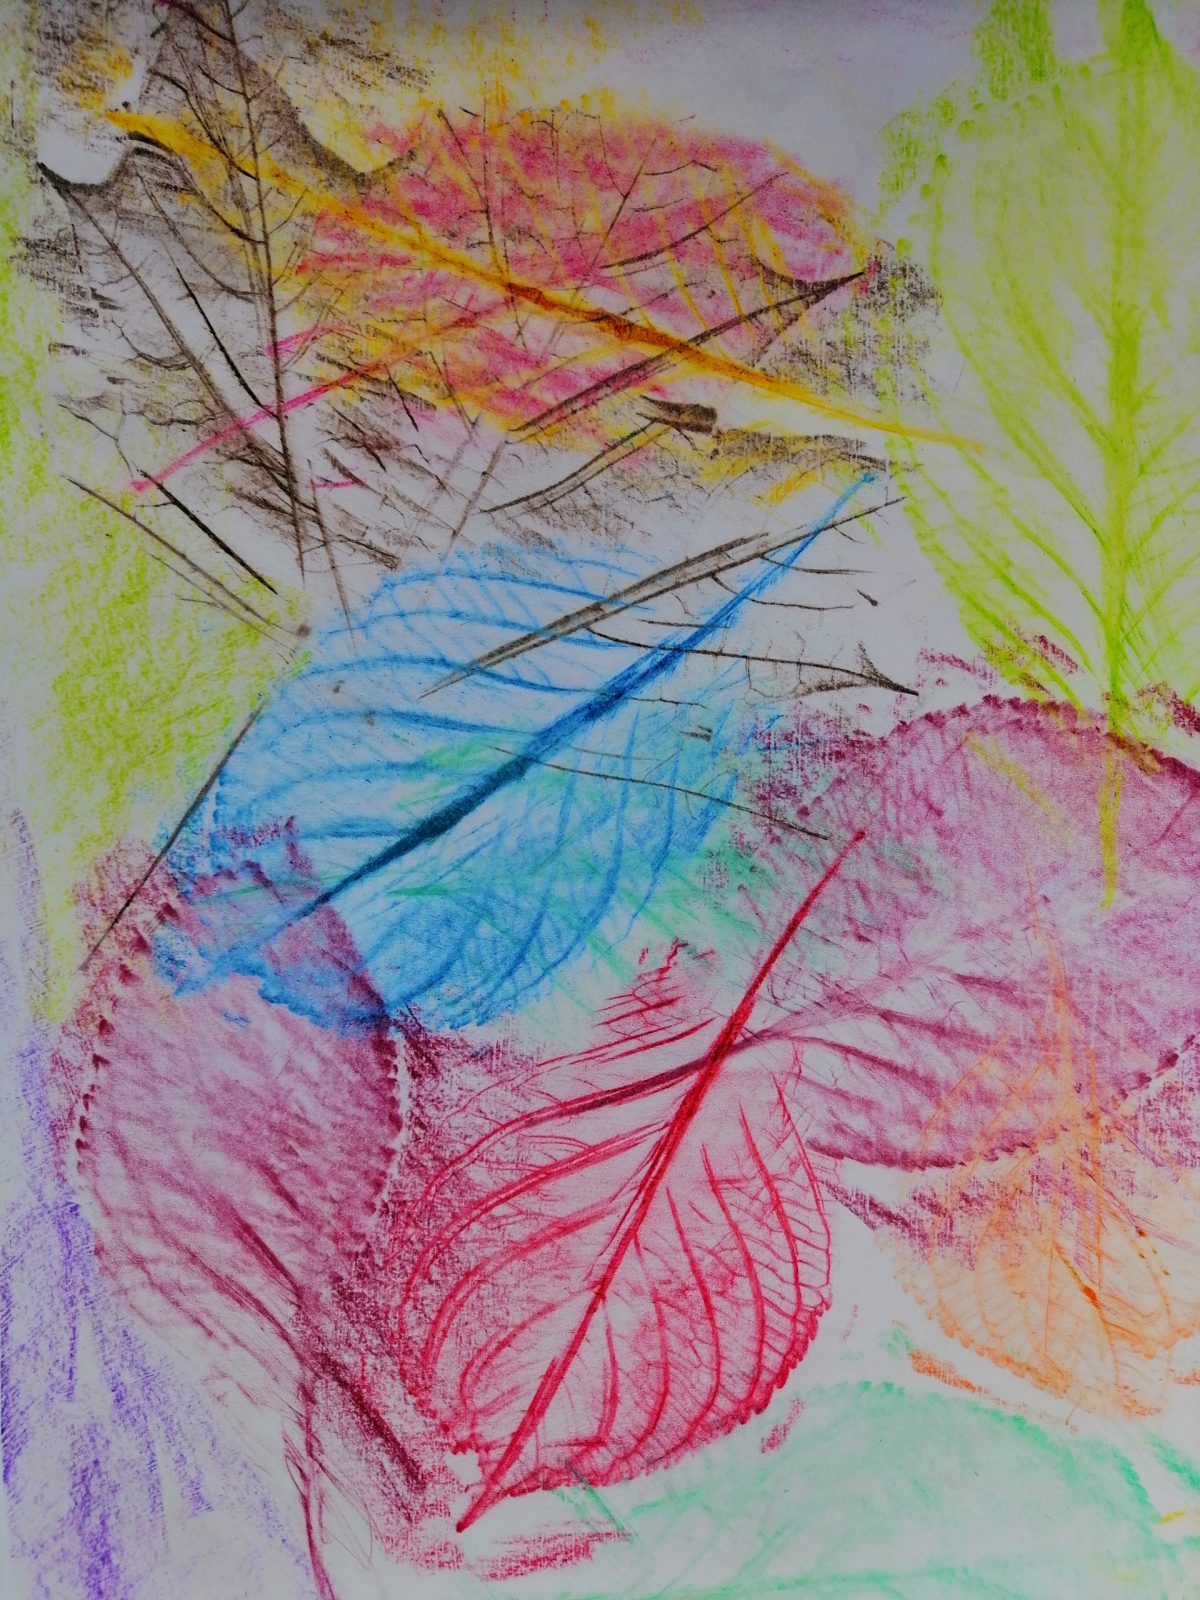 Kompozycja plastyczna struktur kilku jesiennych liści w układzie rytmicznym i diagonalnym. Praca wykonana w technice frotażu z użyciem barw ciepłych i zimnych.